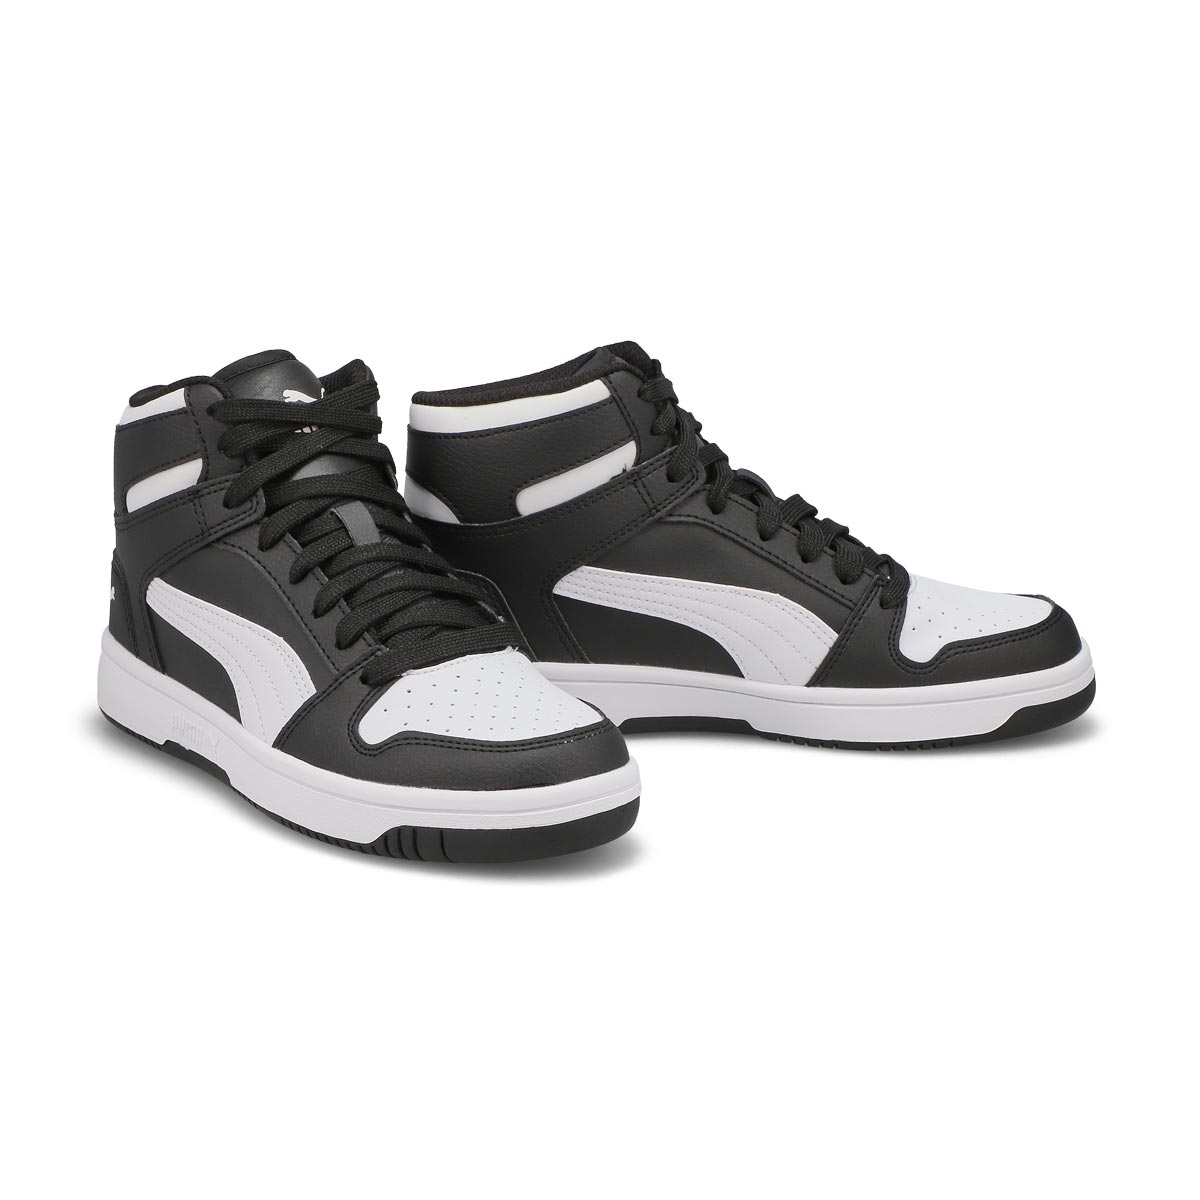 Kids' Rebound Layup SL Jr High Top Sneaker - Black/White